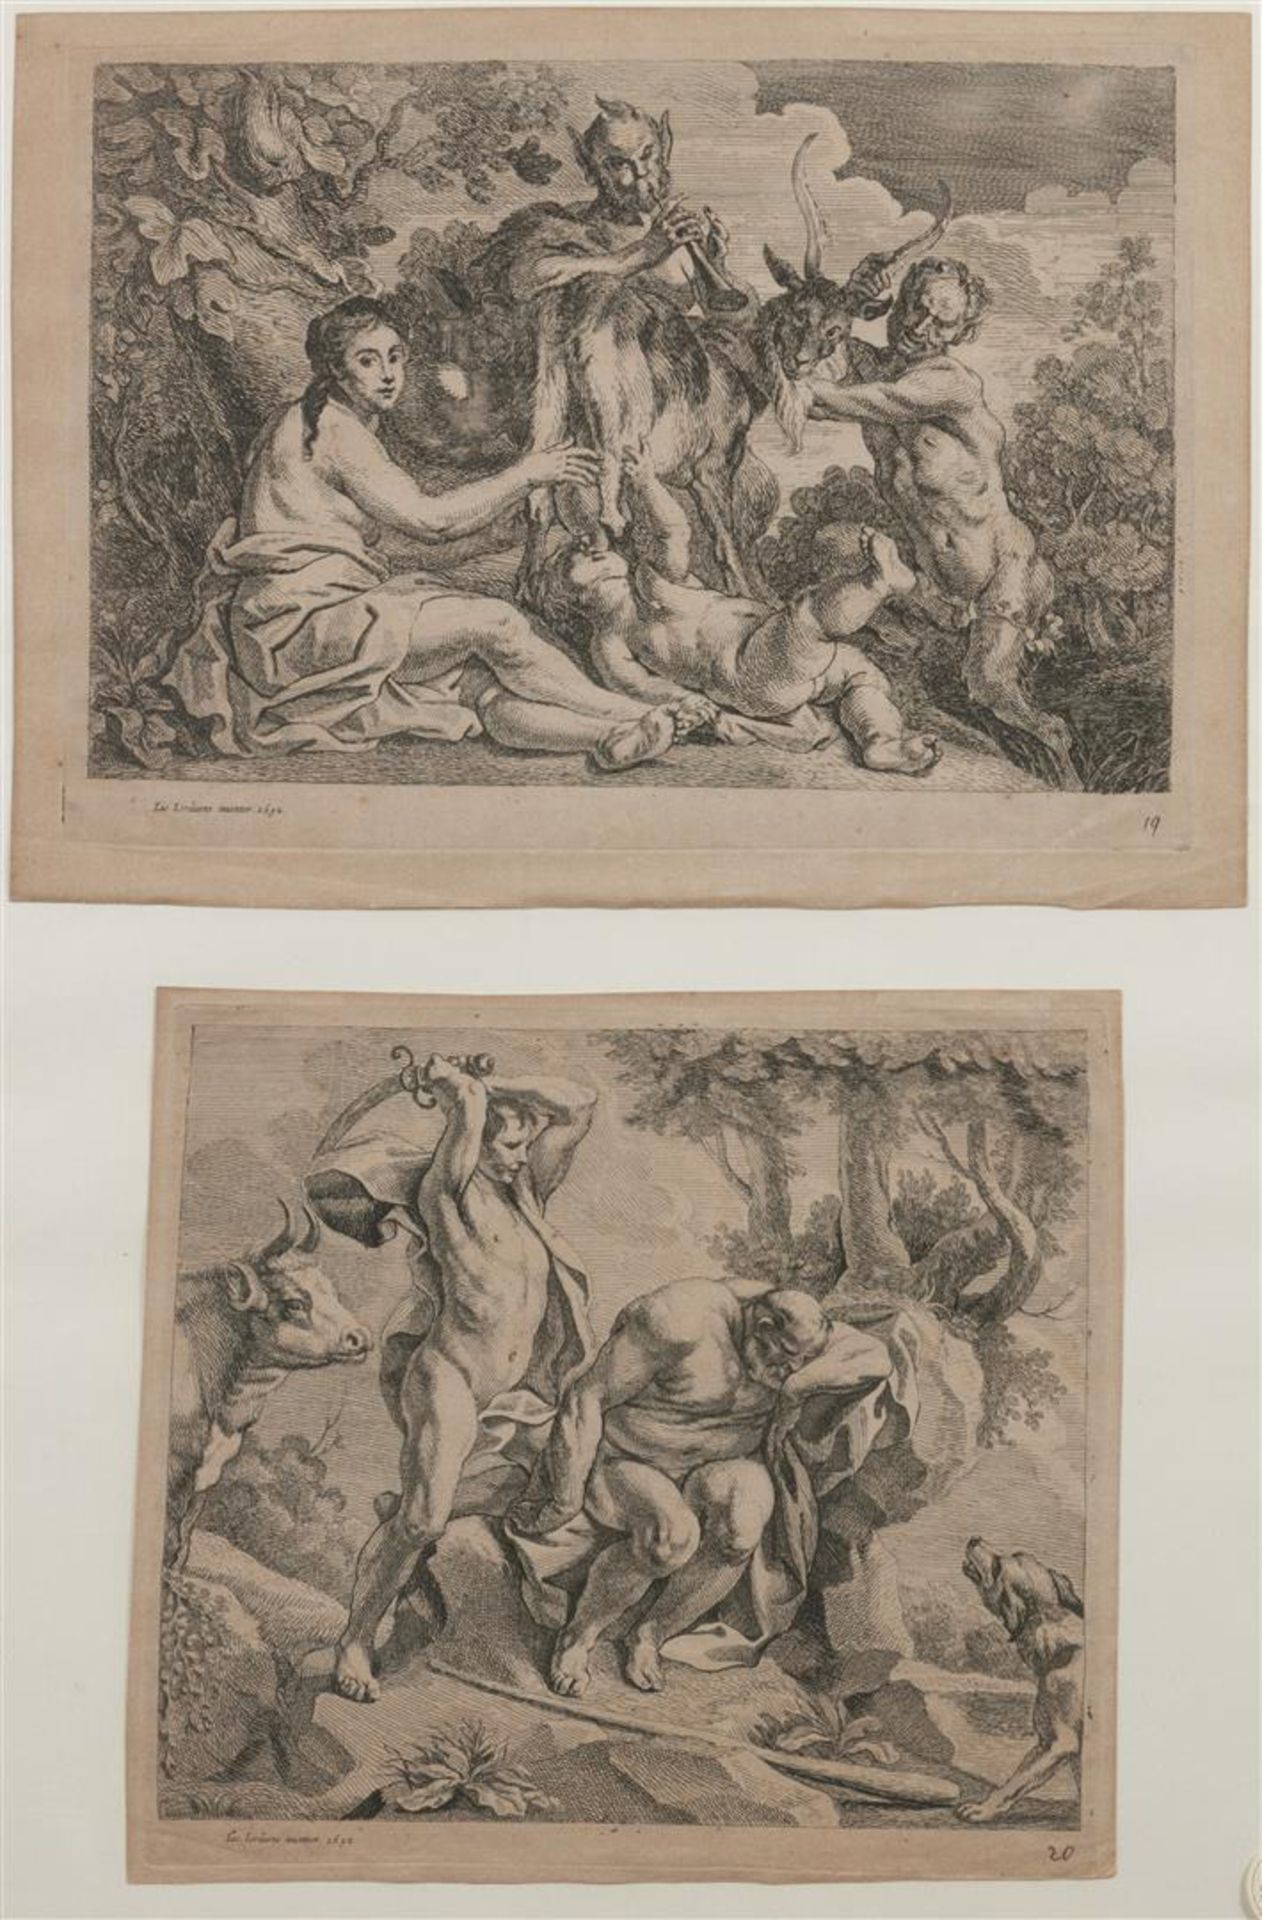 Jacob Jordaens (1573-1678) Jupiter fed by the goat Amalthea